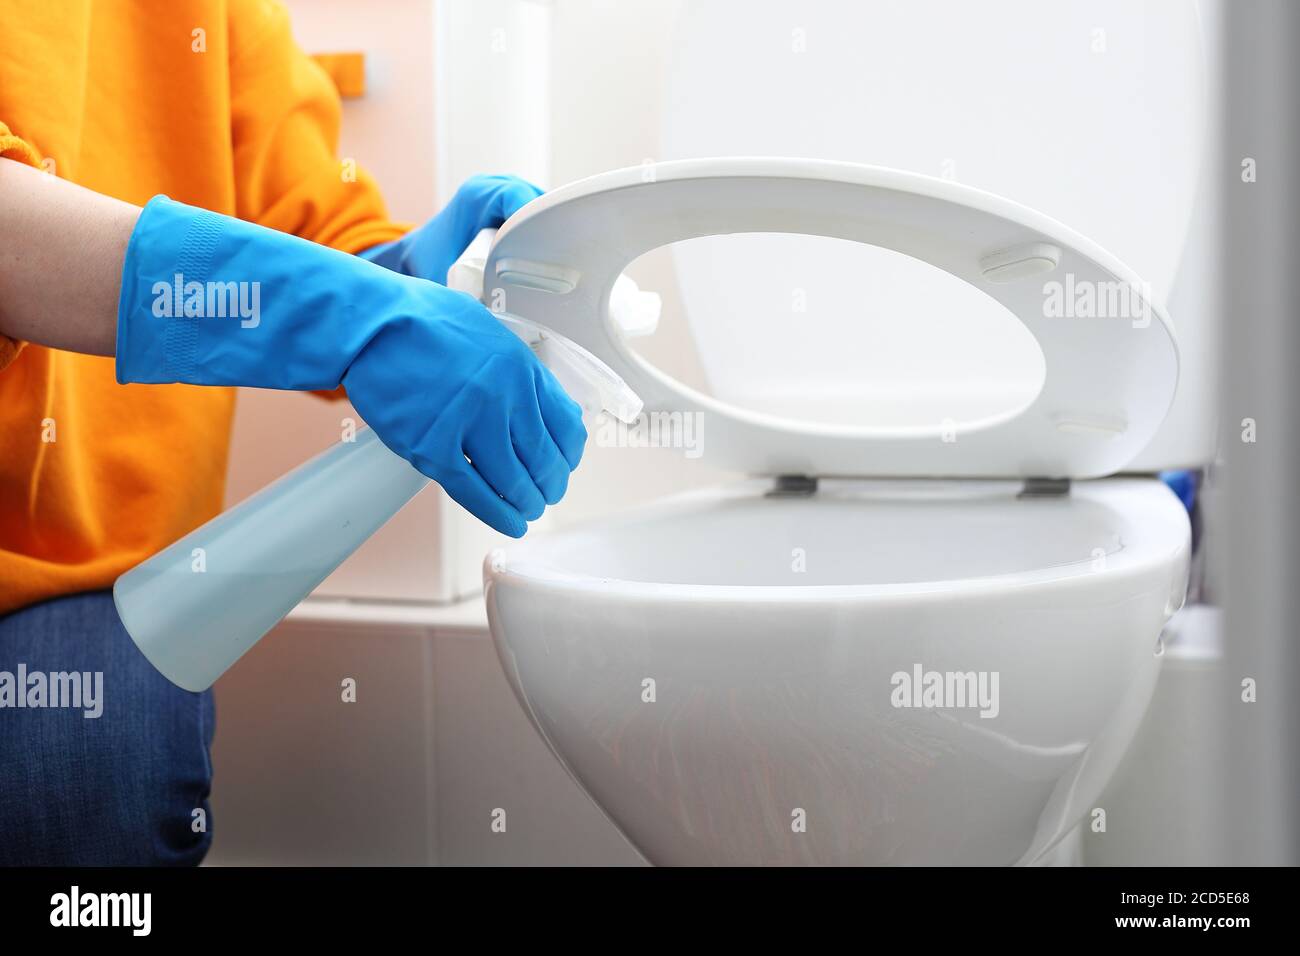 Desinfektion der Toilettenschüssel, Reinigung der Toilette. Reinigung der Toilette. Toilettenreinigung und Desinfektion. Eine Frau reinigt die Toilette mit einem Desinfektionsmittel Stockfoto